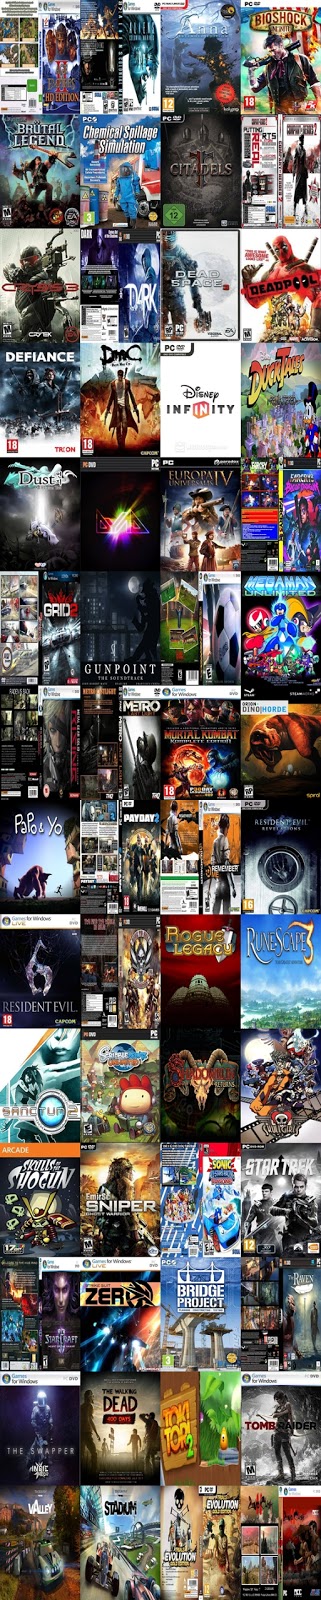 Terjual .::: Malang PC Games Murah dan Terupdate (3500/dvd) :::. - 